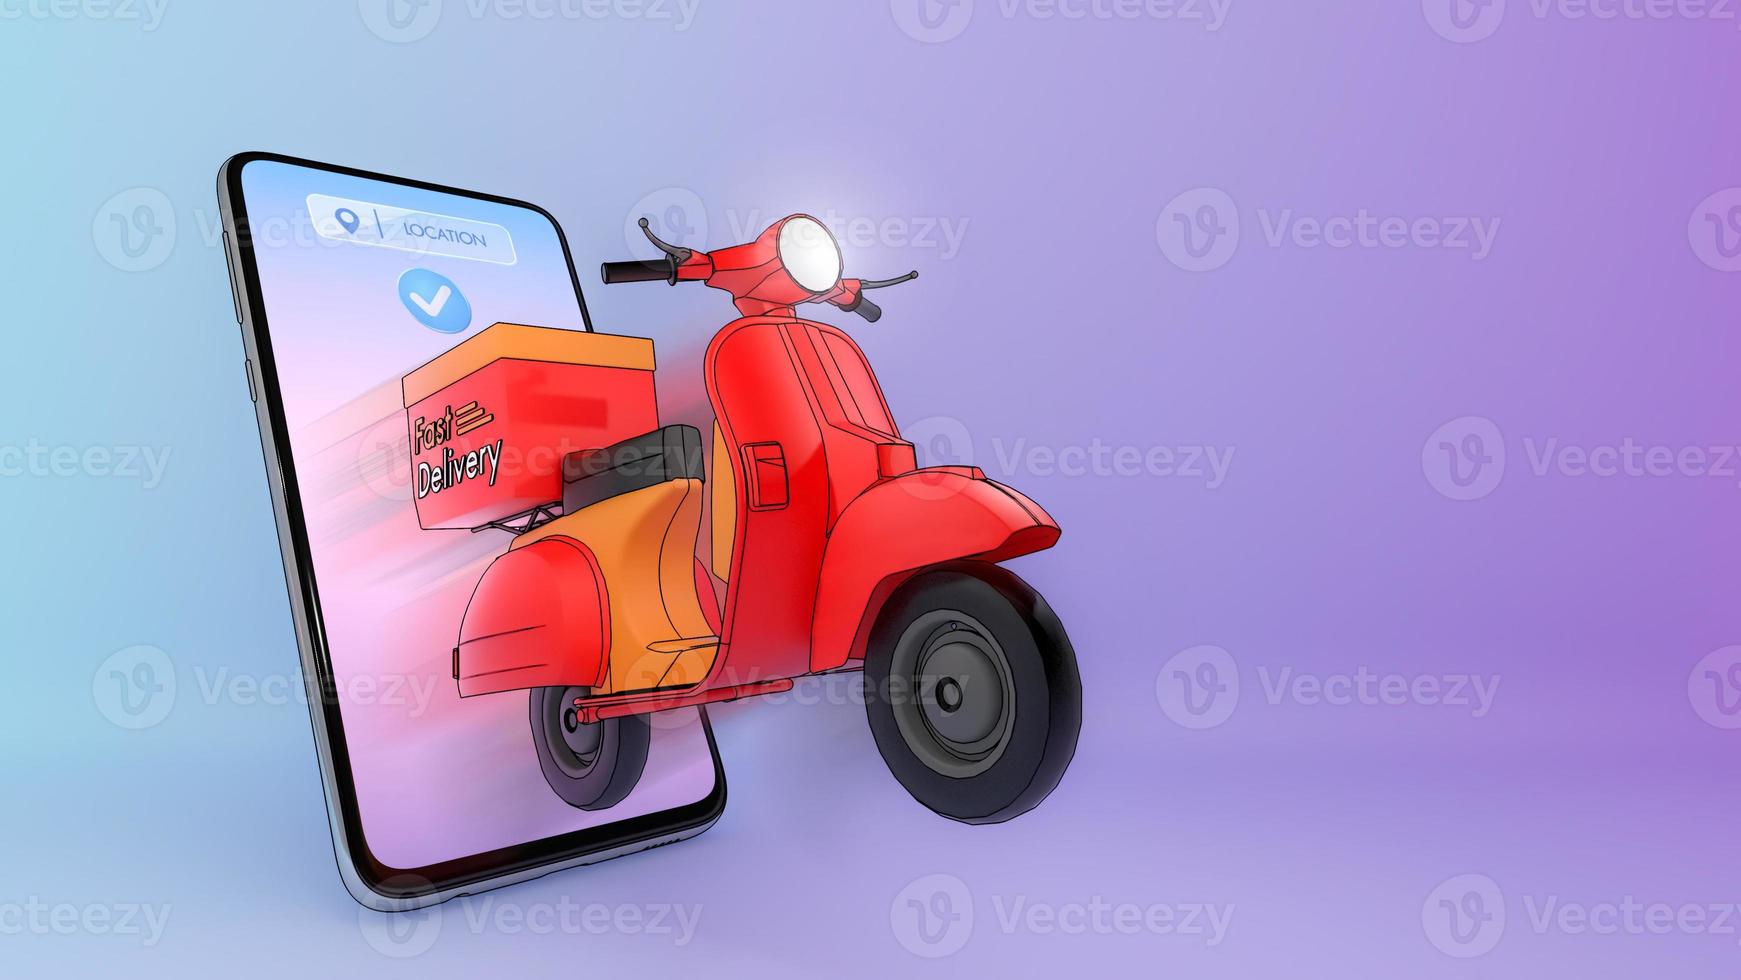 scooter espulso da un telefono cellulare.,concetto di servizio di consegna veloce e shopping online.,illustrazione 3d con percorso di ritaglio oggetto. foto